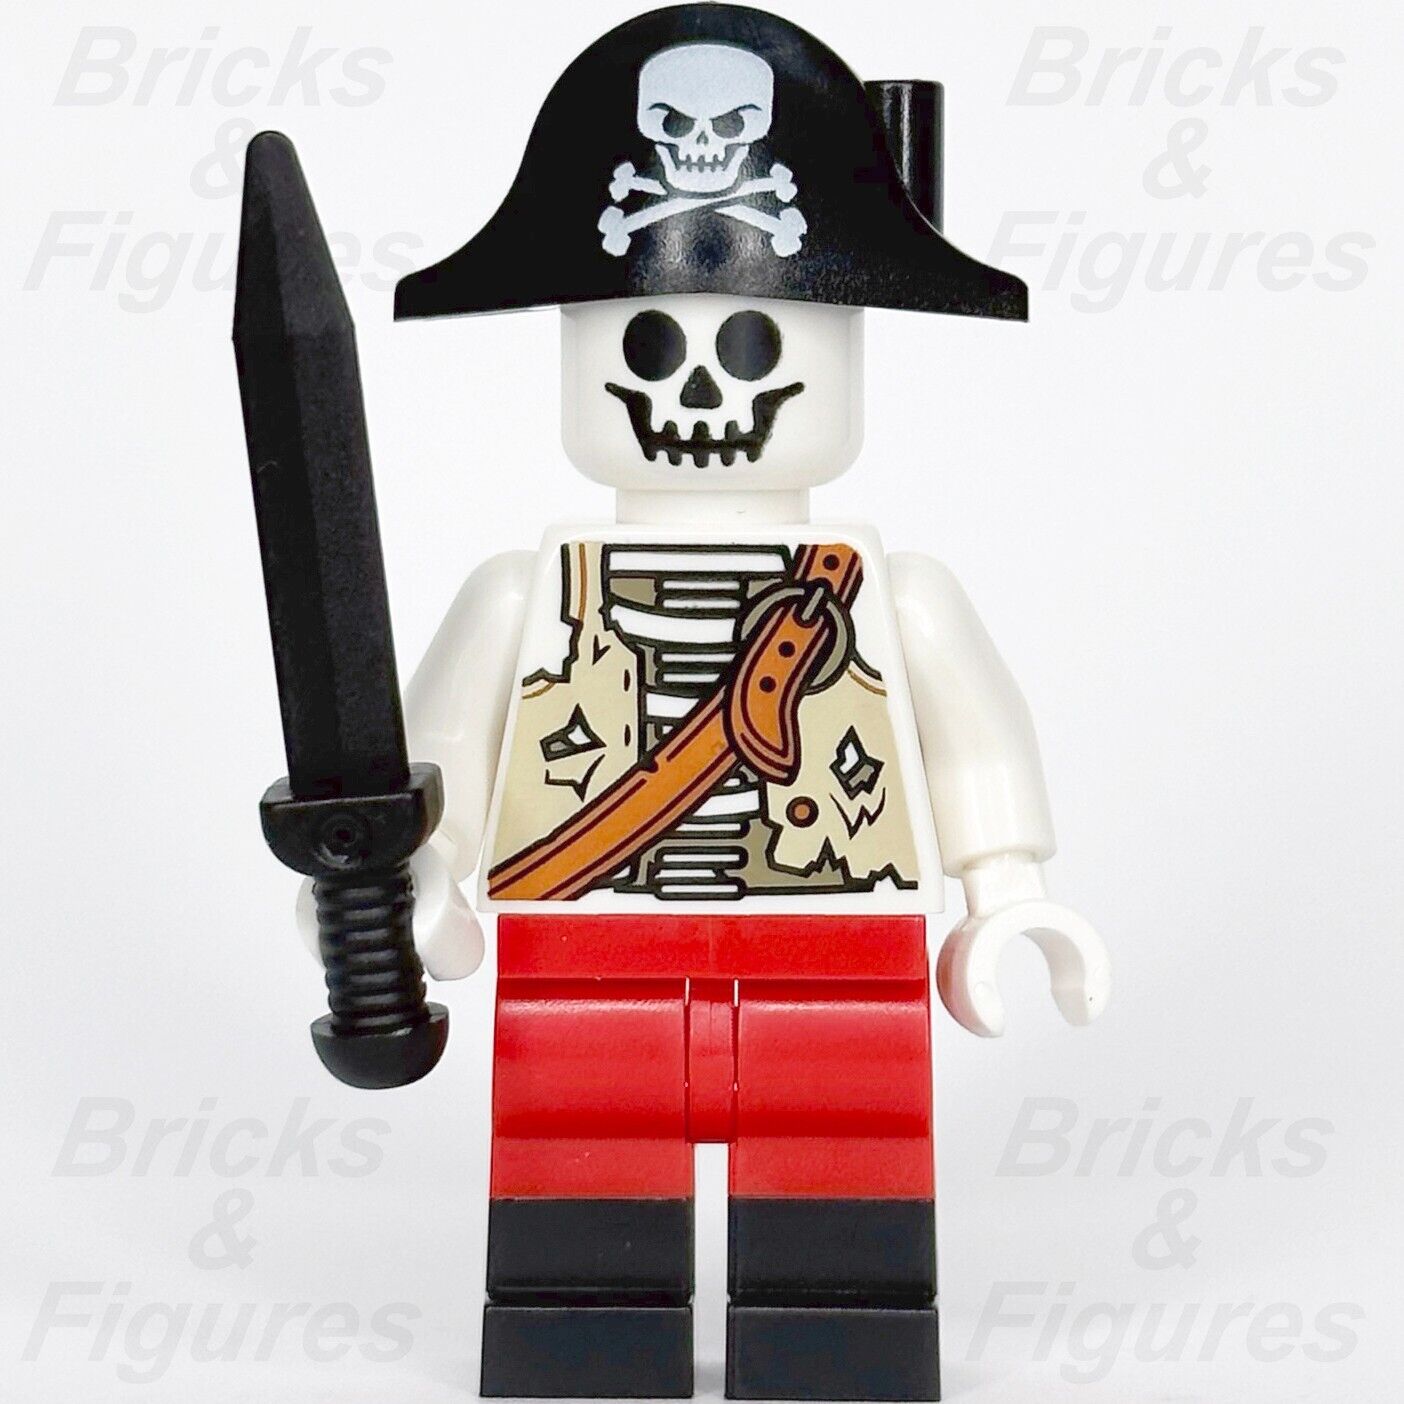 New LEGO Store minifigures: skeleton pirate, unicorn knight